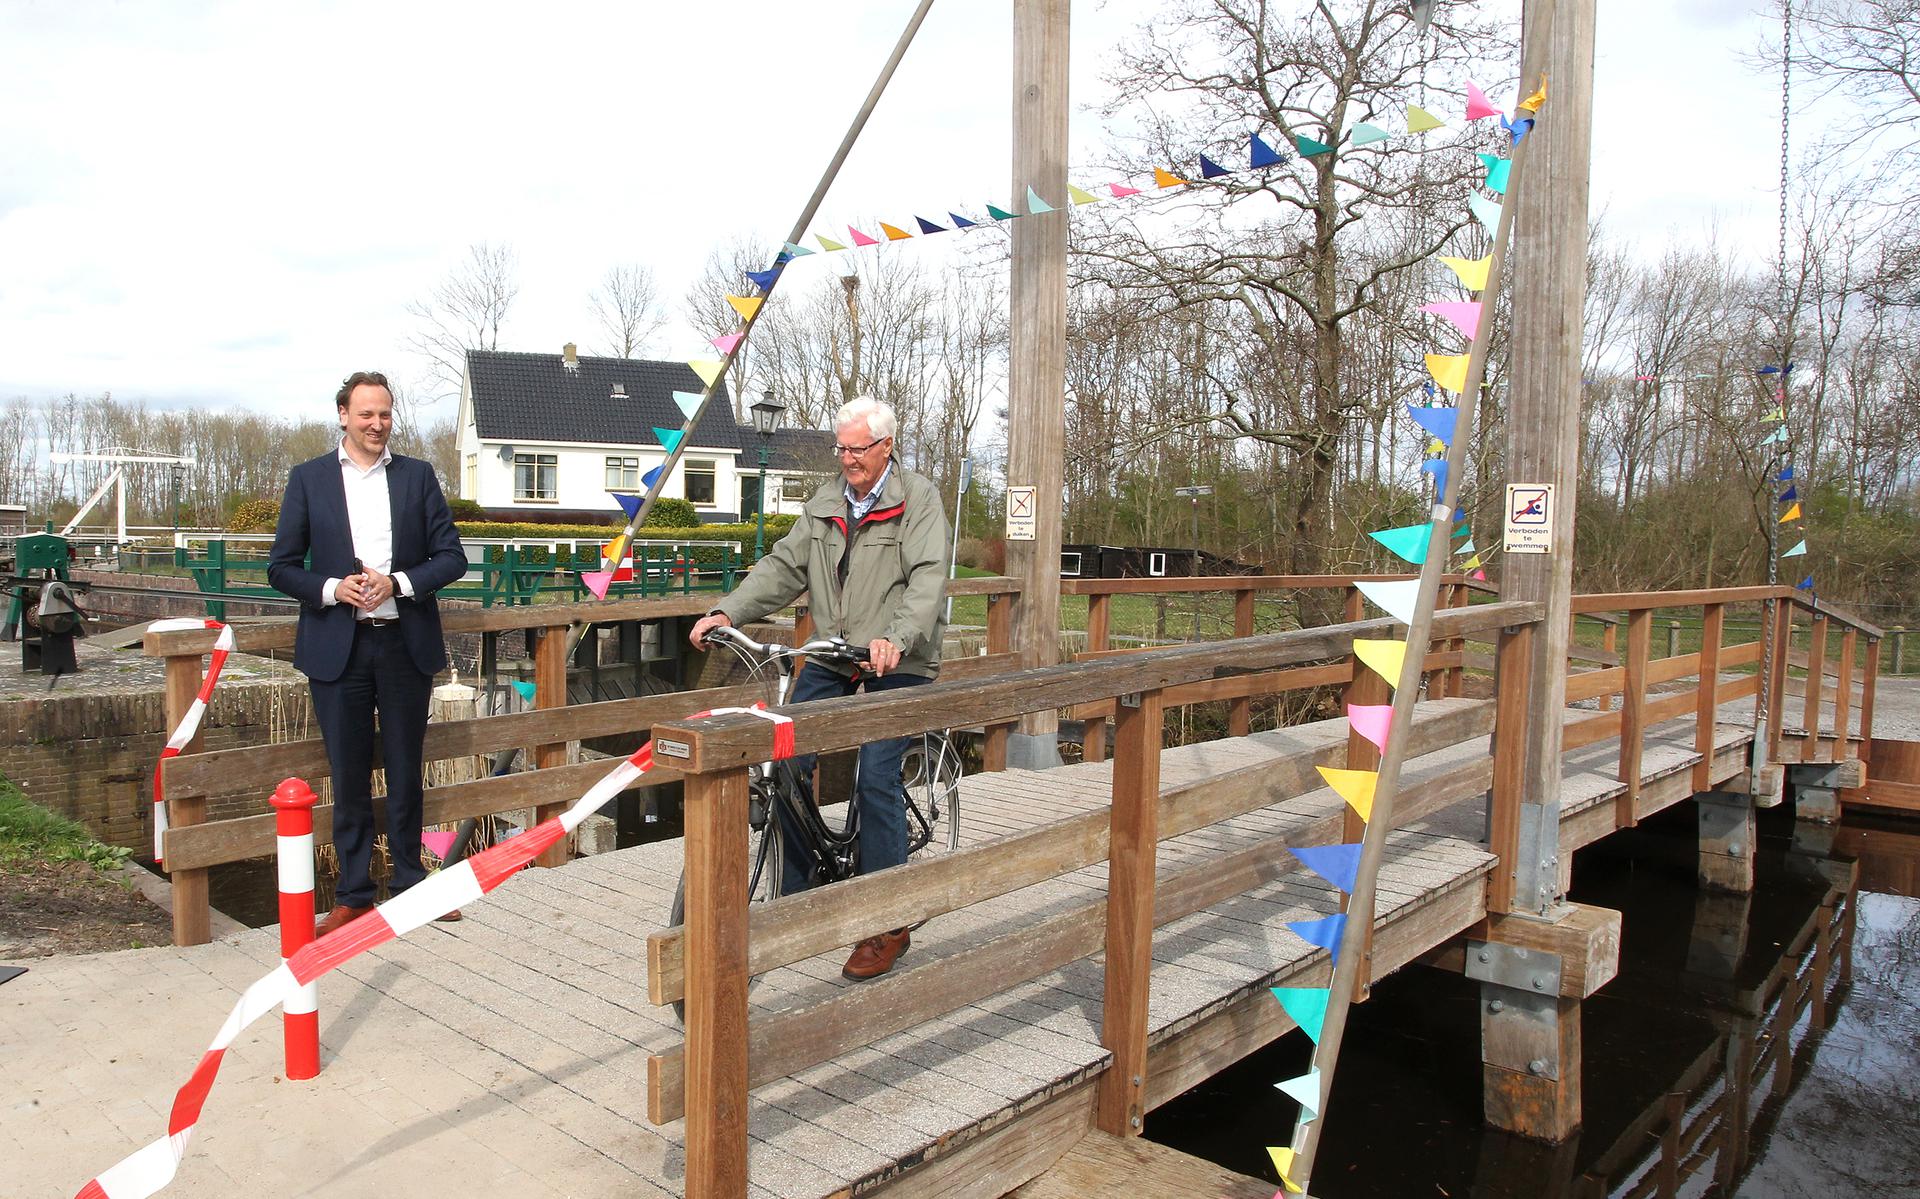 Wethouder Roelof Theun Hoen verricht de openingshandeling. De eerste fietser maakt direct gebruik van de brug.